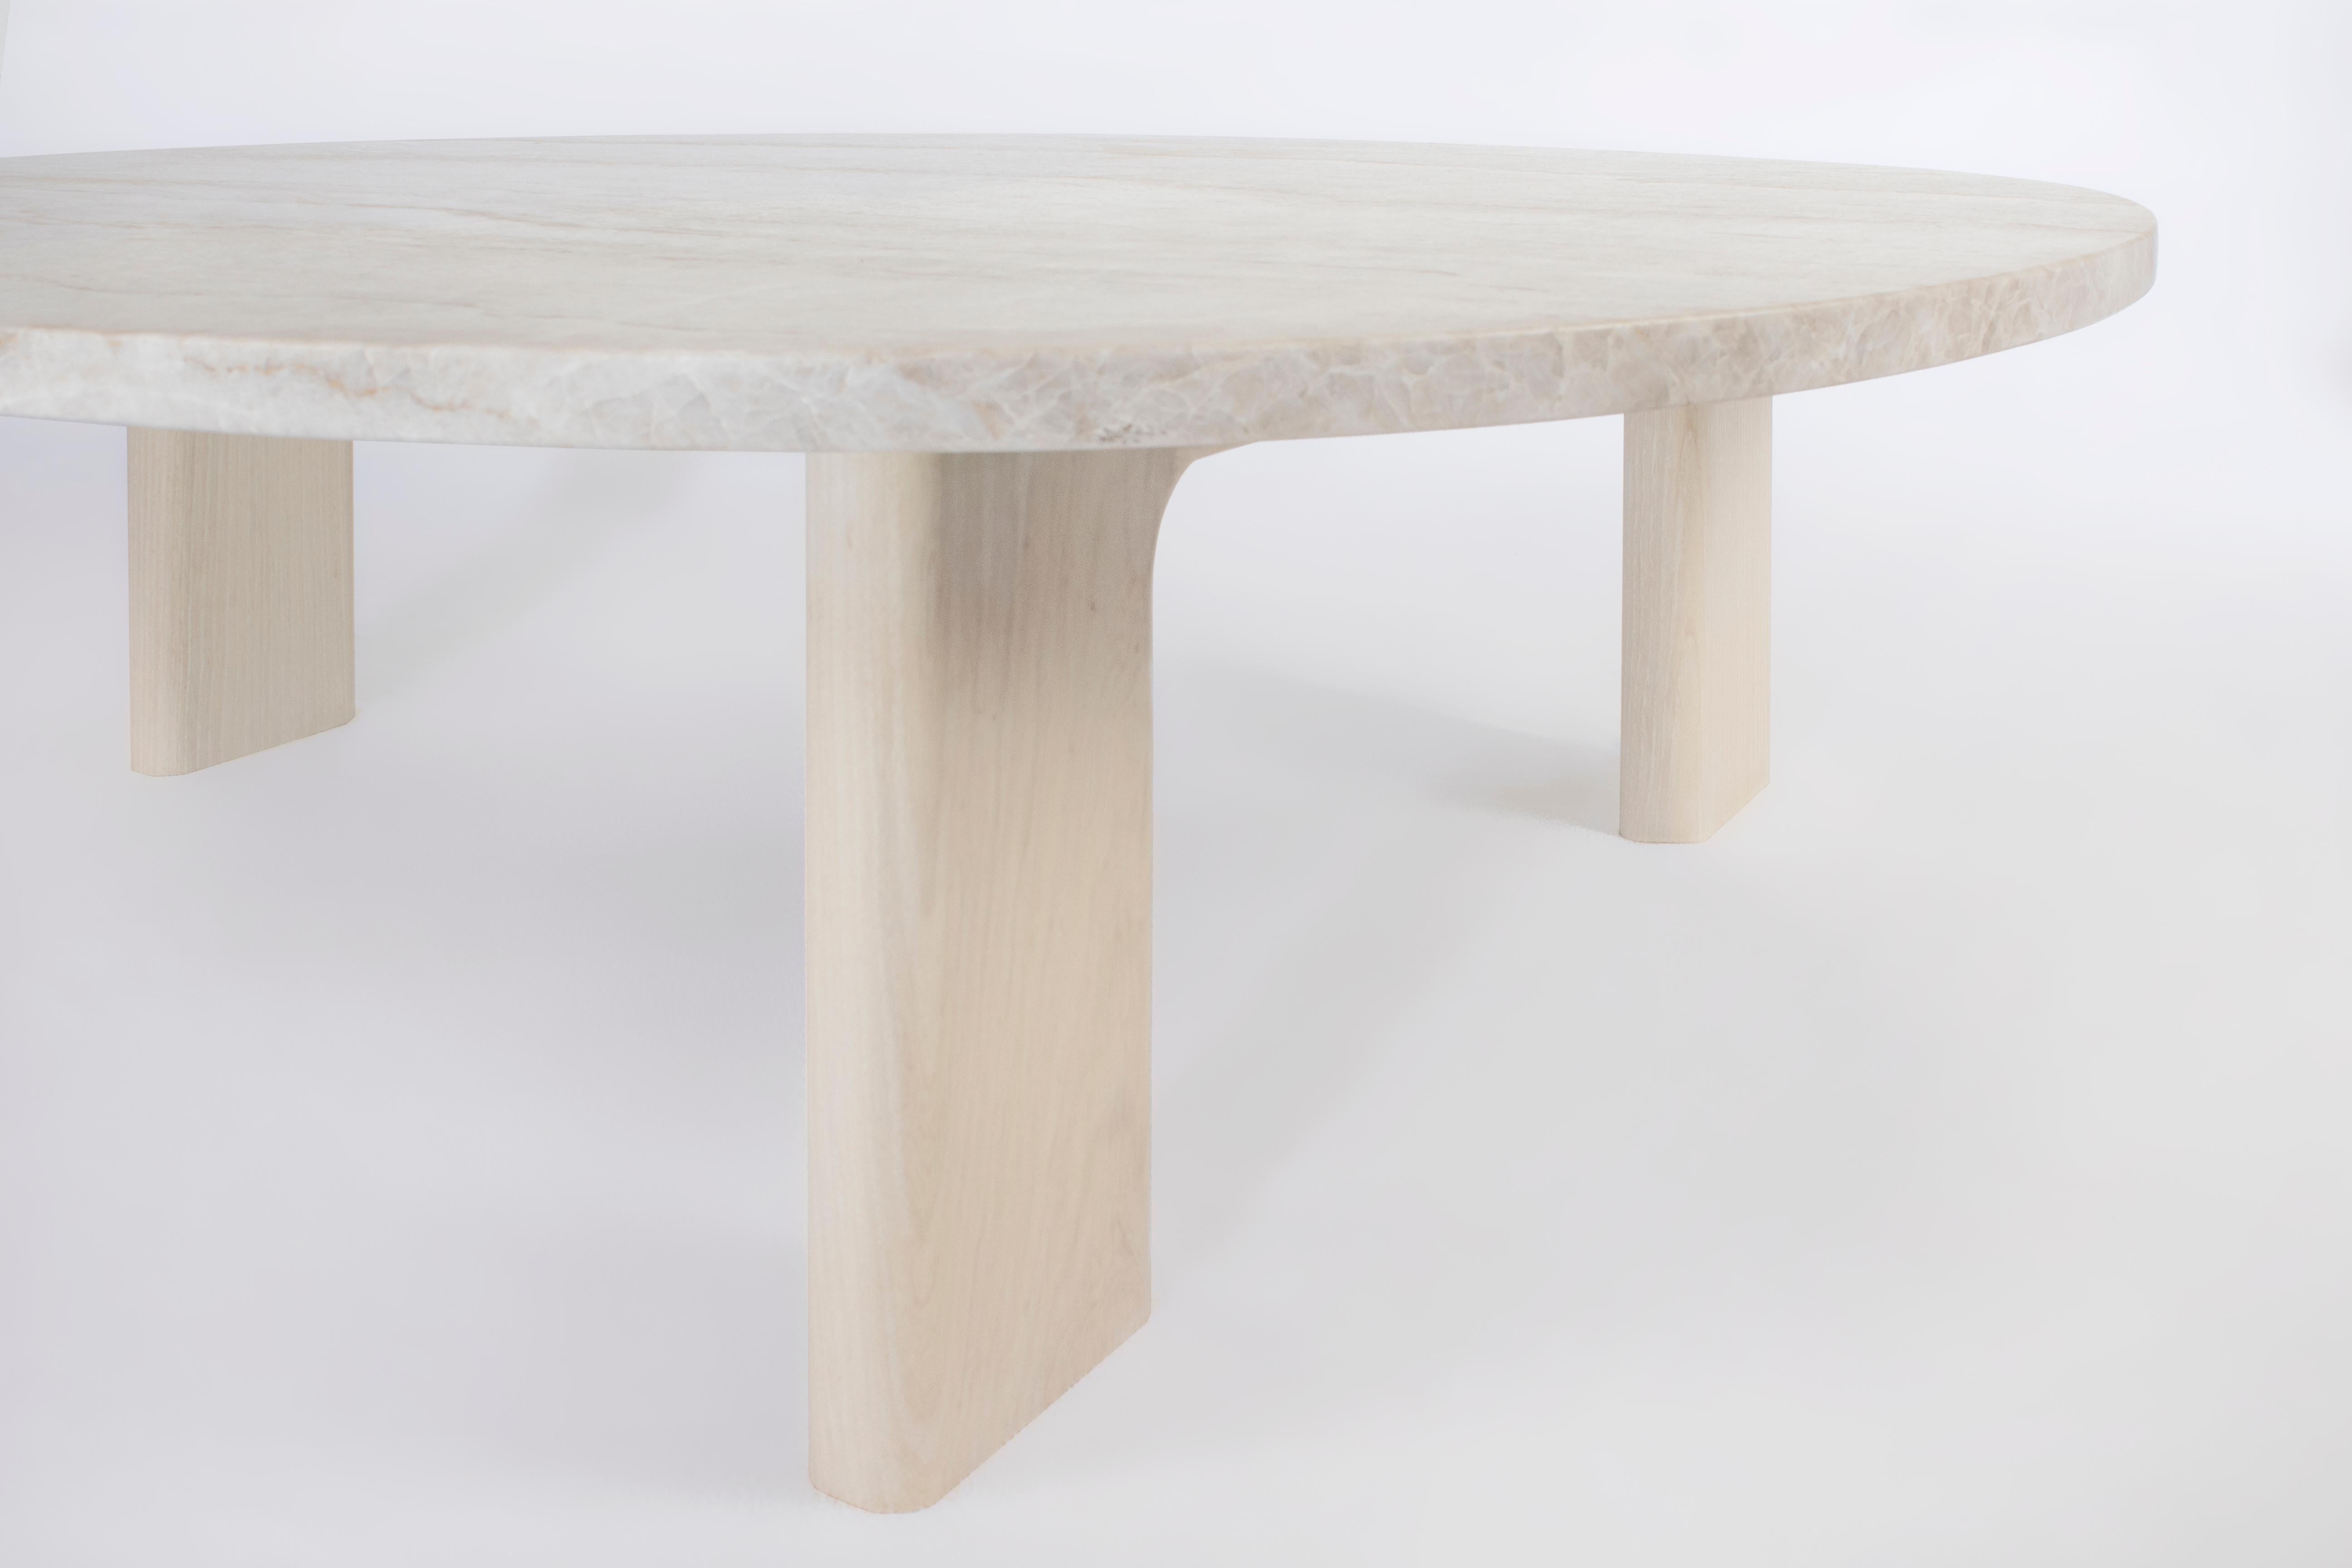 Der Vesta-Tisch schafft den Spagat zwischen Komfort und Raffinesse. Eine organisch geschwungene Marmorplatte ruht auf drei massiven, aber geformten Holzbeinen, die das entspannte Gefühl von Massivholz mit einer kühlen, raffinierten Marmoroberfläche